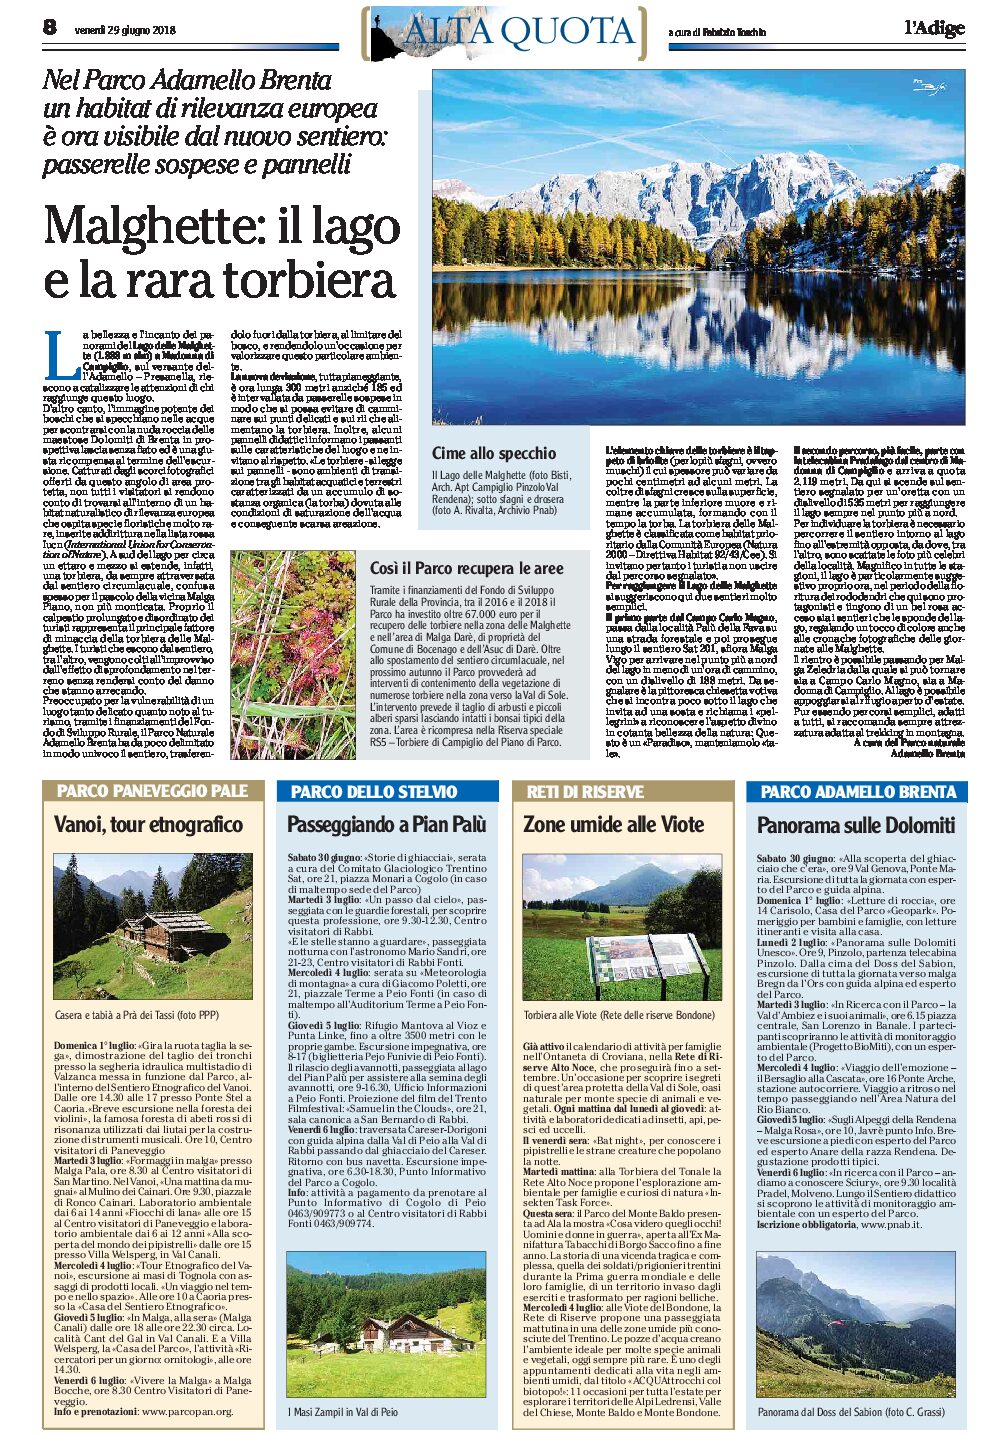 Parco Adamello Brenta: sentieri e passerelle sul lago delle Malghette per salvare la rara torbiera